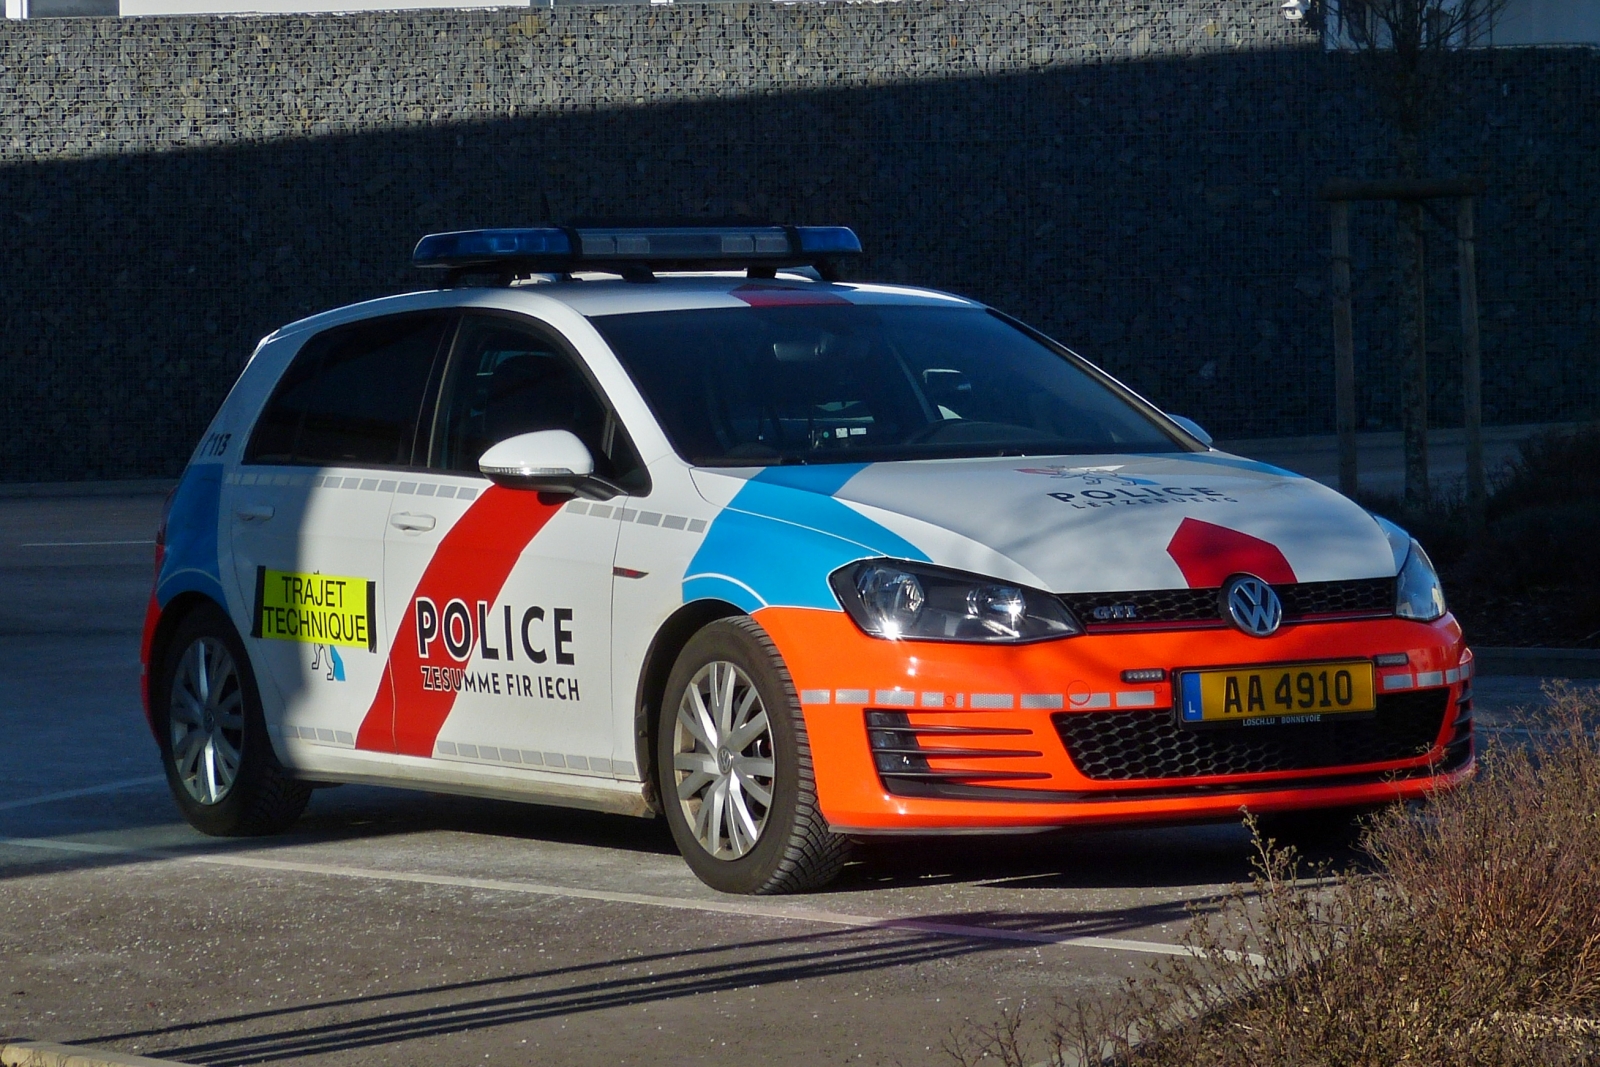 VW Golf der luxemburgischen Polizei stand am 08.02.2023 auf dem Parkplatz der Technischen Kontrolle in Marnach.

